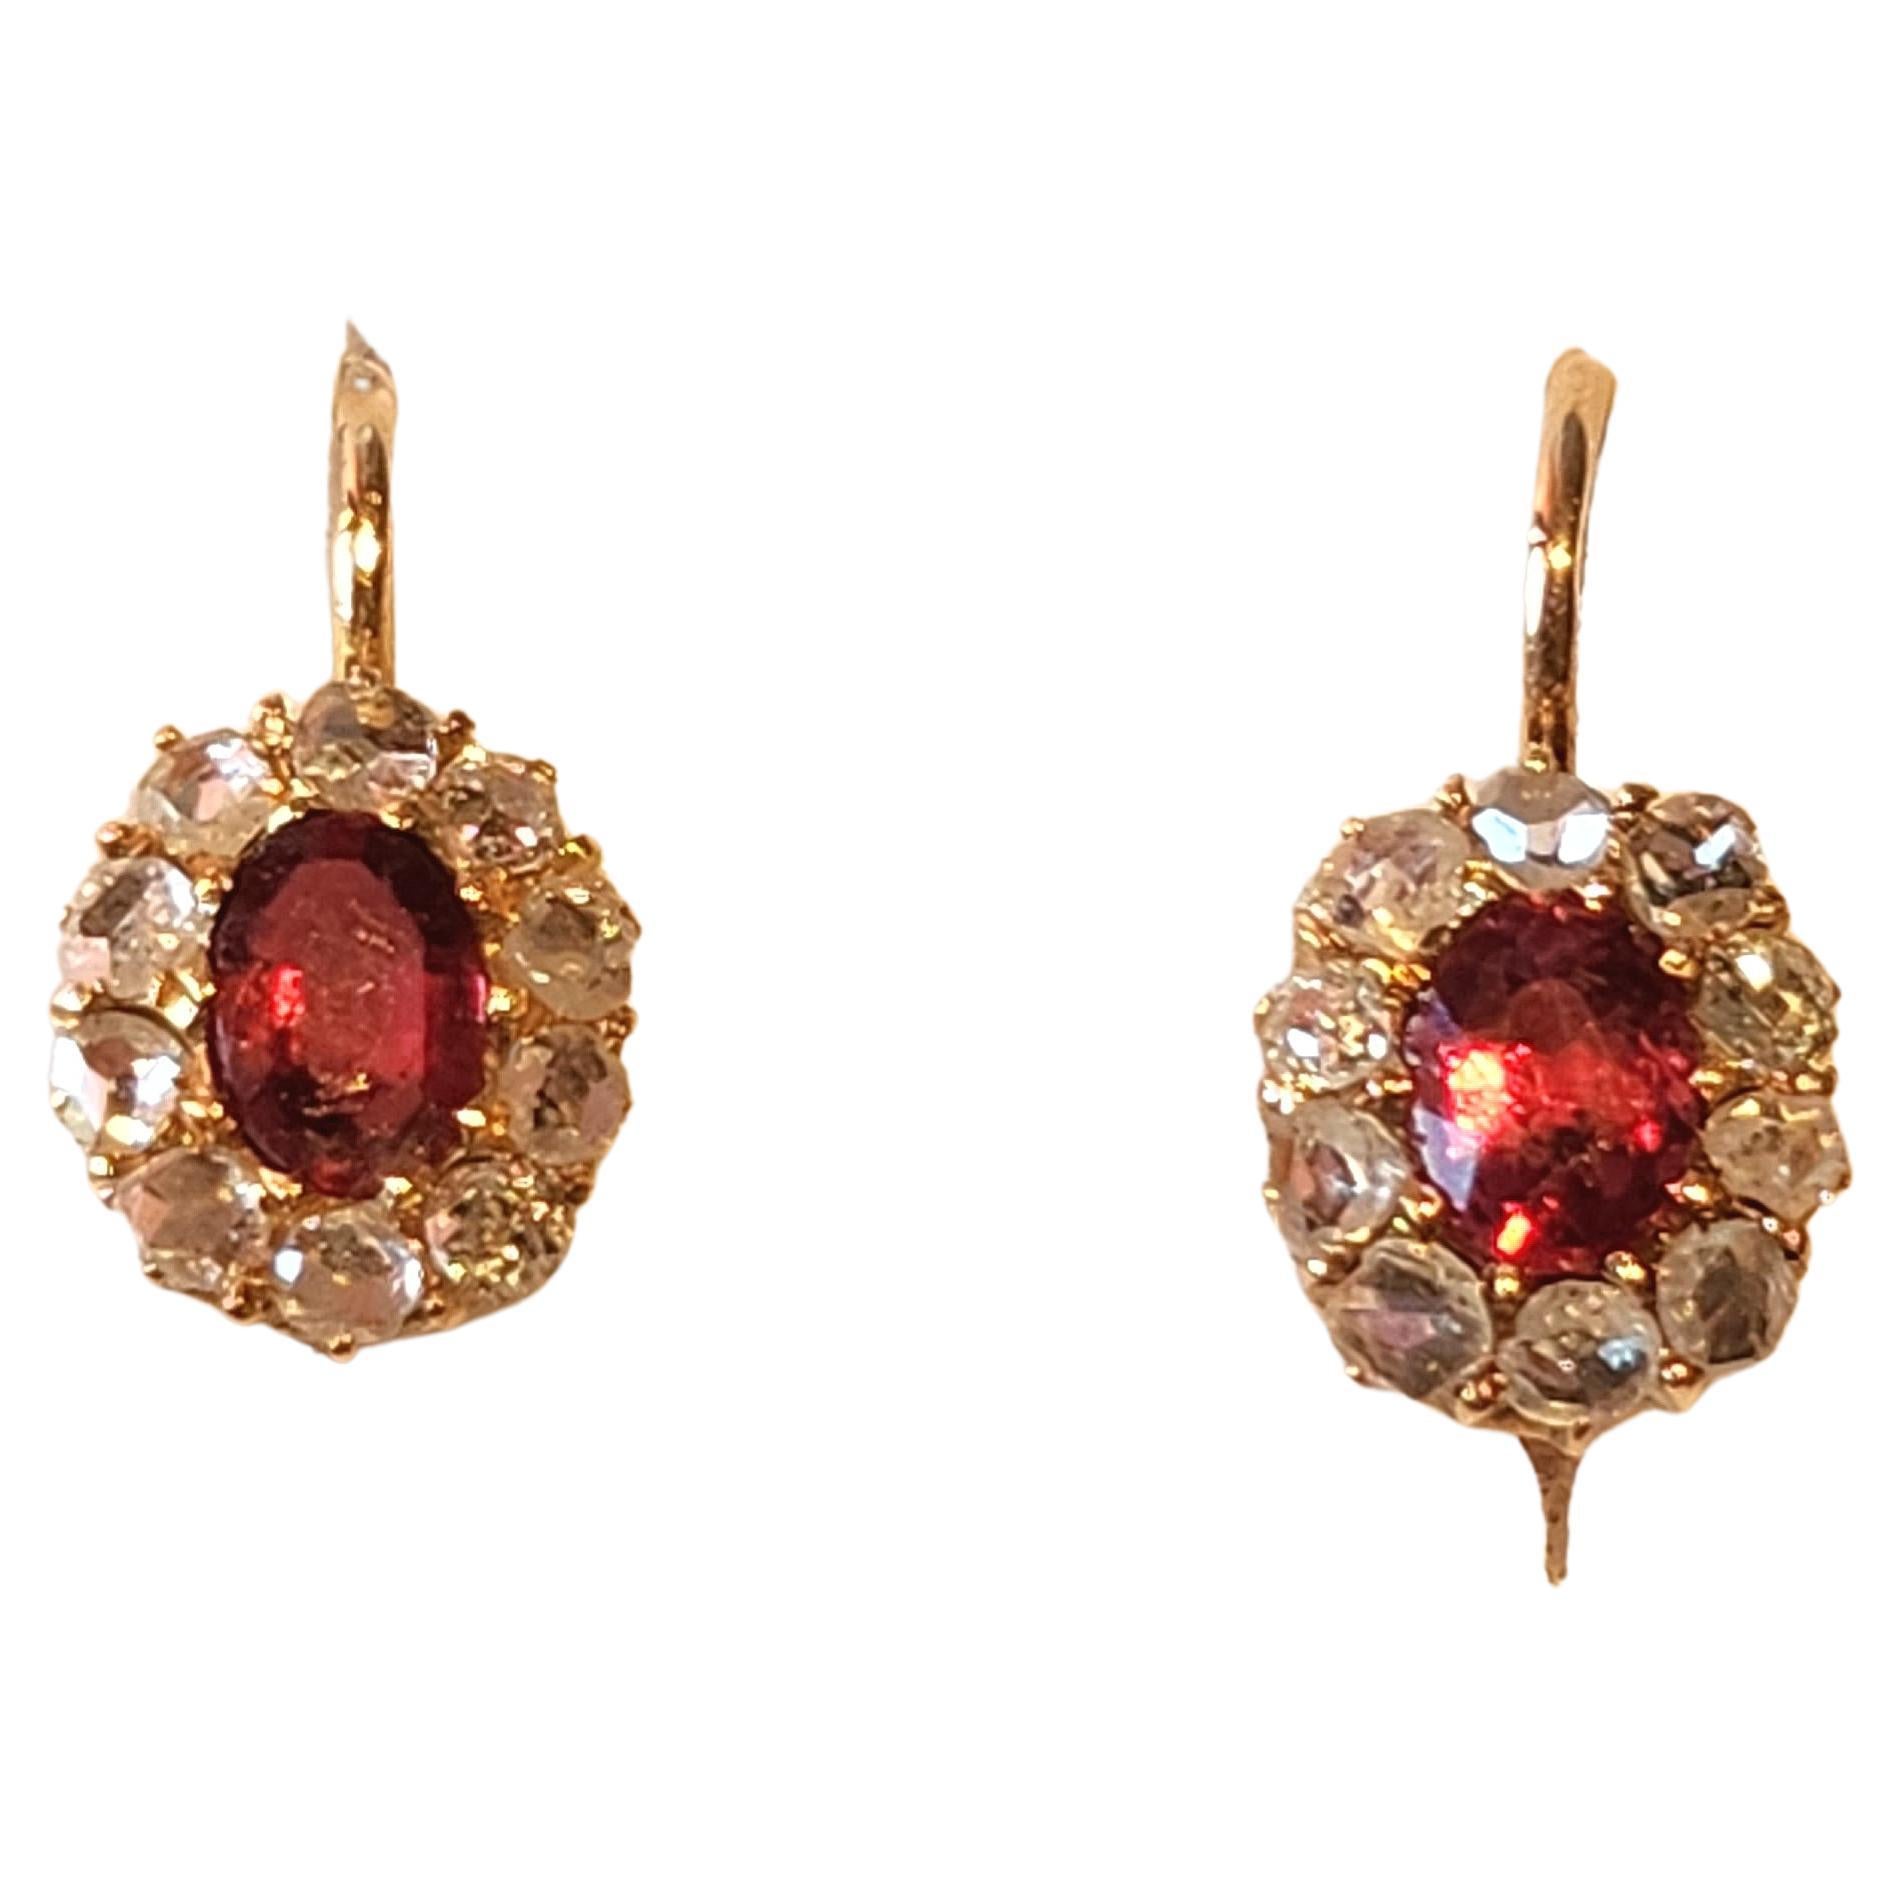 russian earrings gold